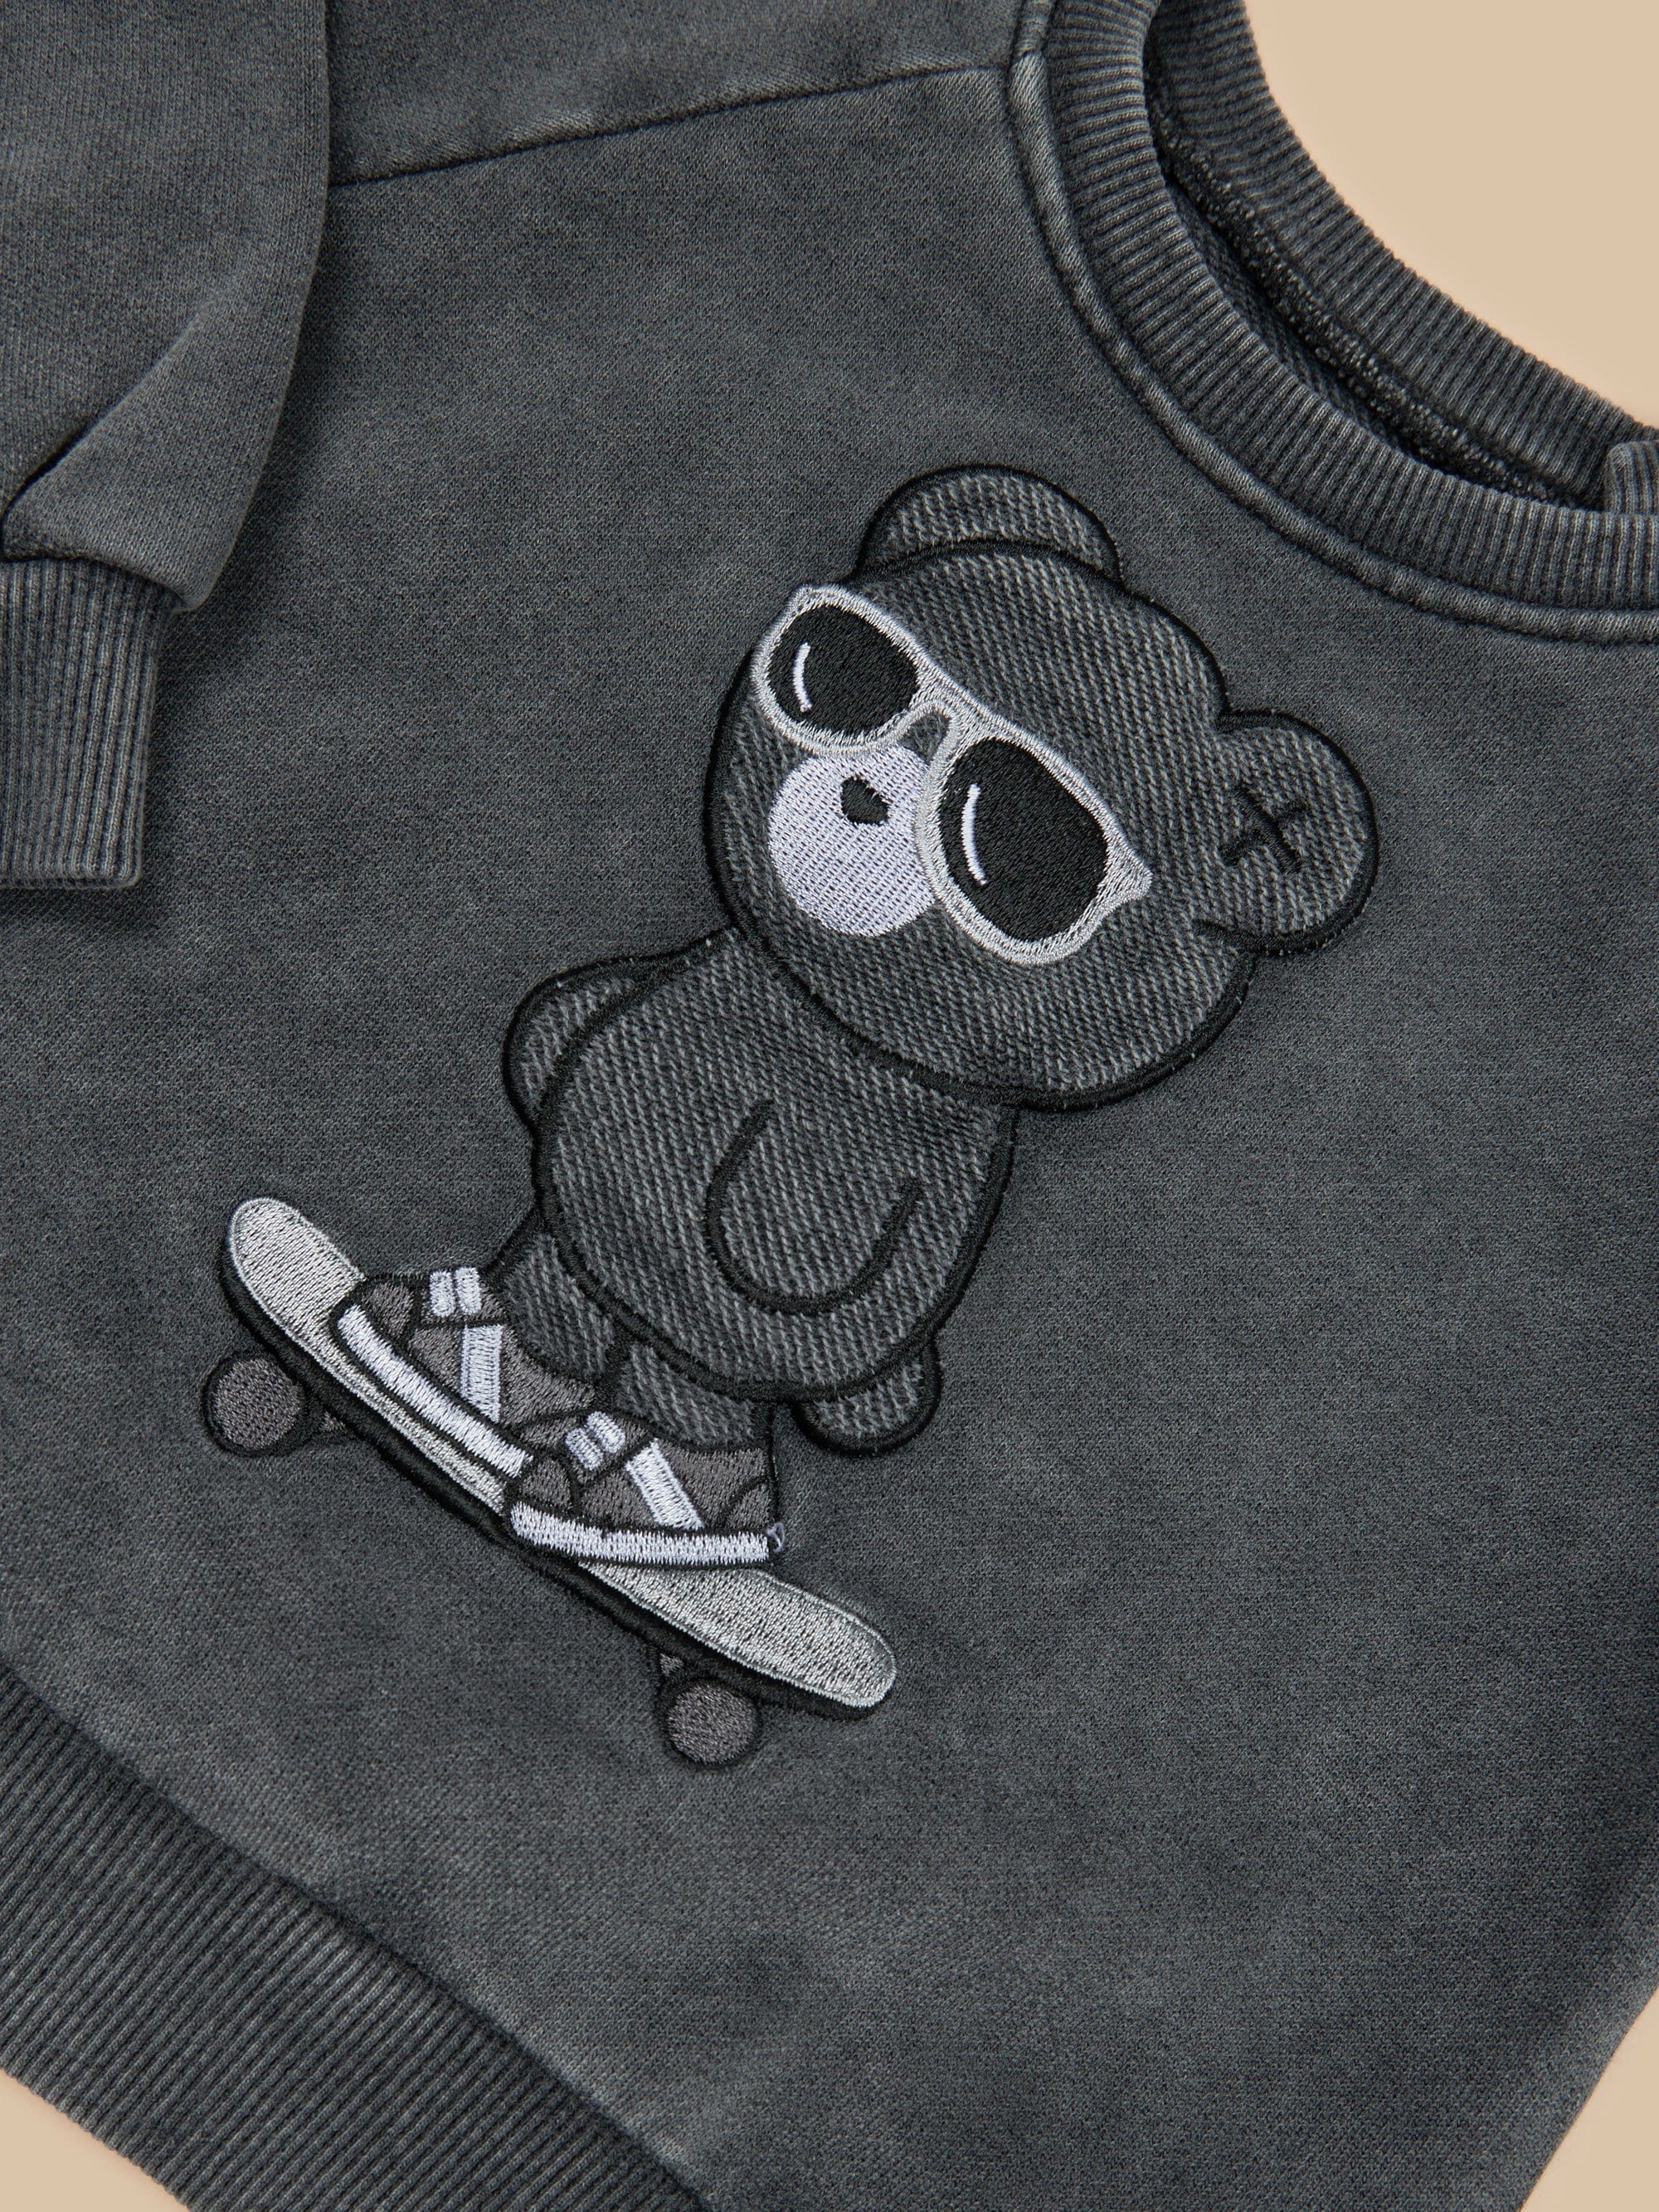 Skater Bear Sweatshirt - Vintage Black - Twinkle Twinkle Little One